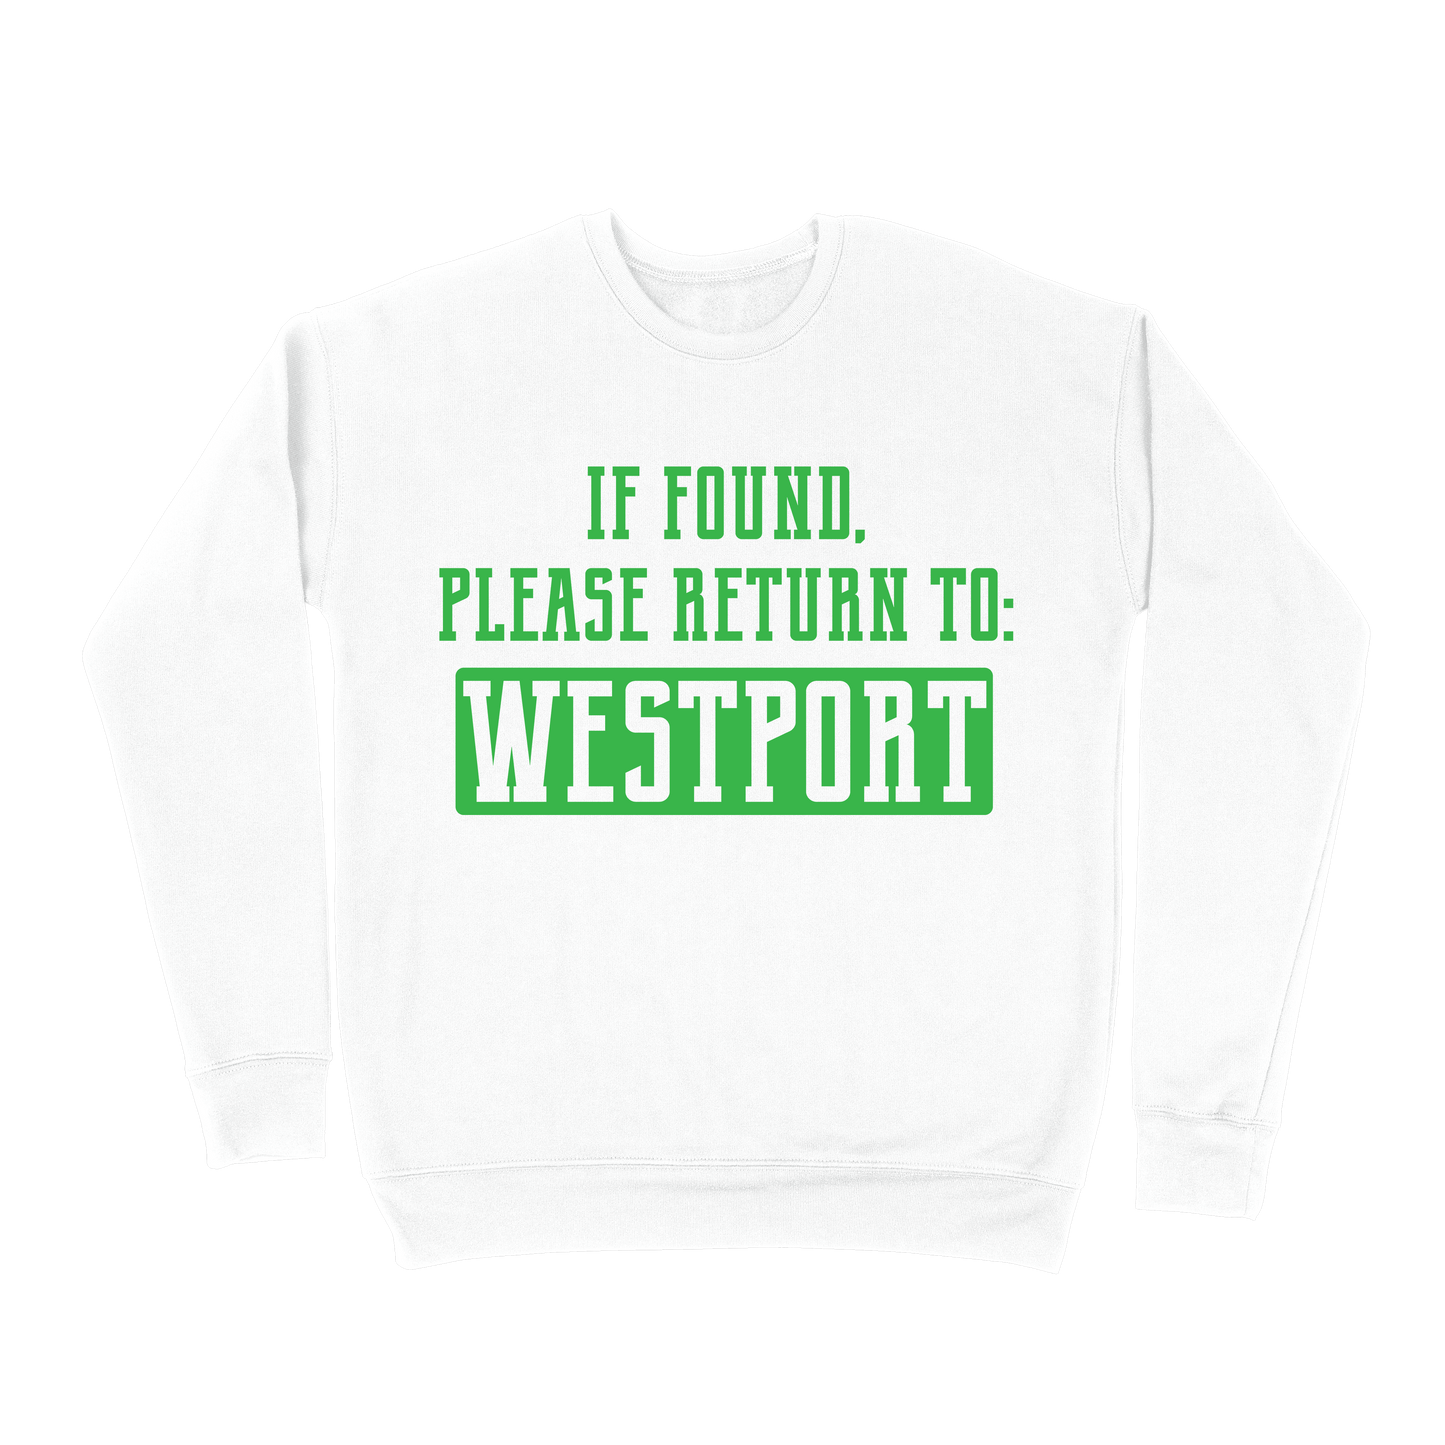 If Found, Please Return to Westport Sweatshirt - White